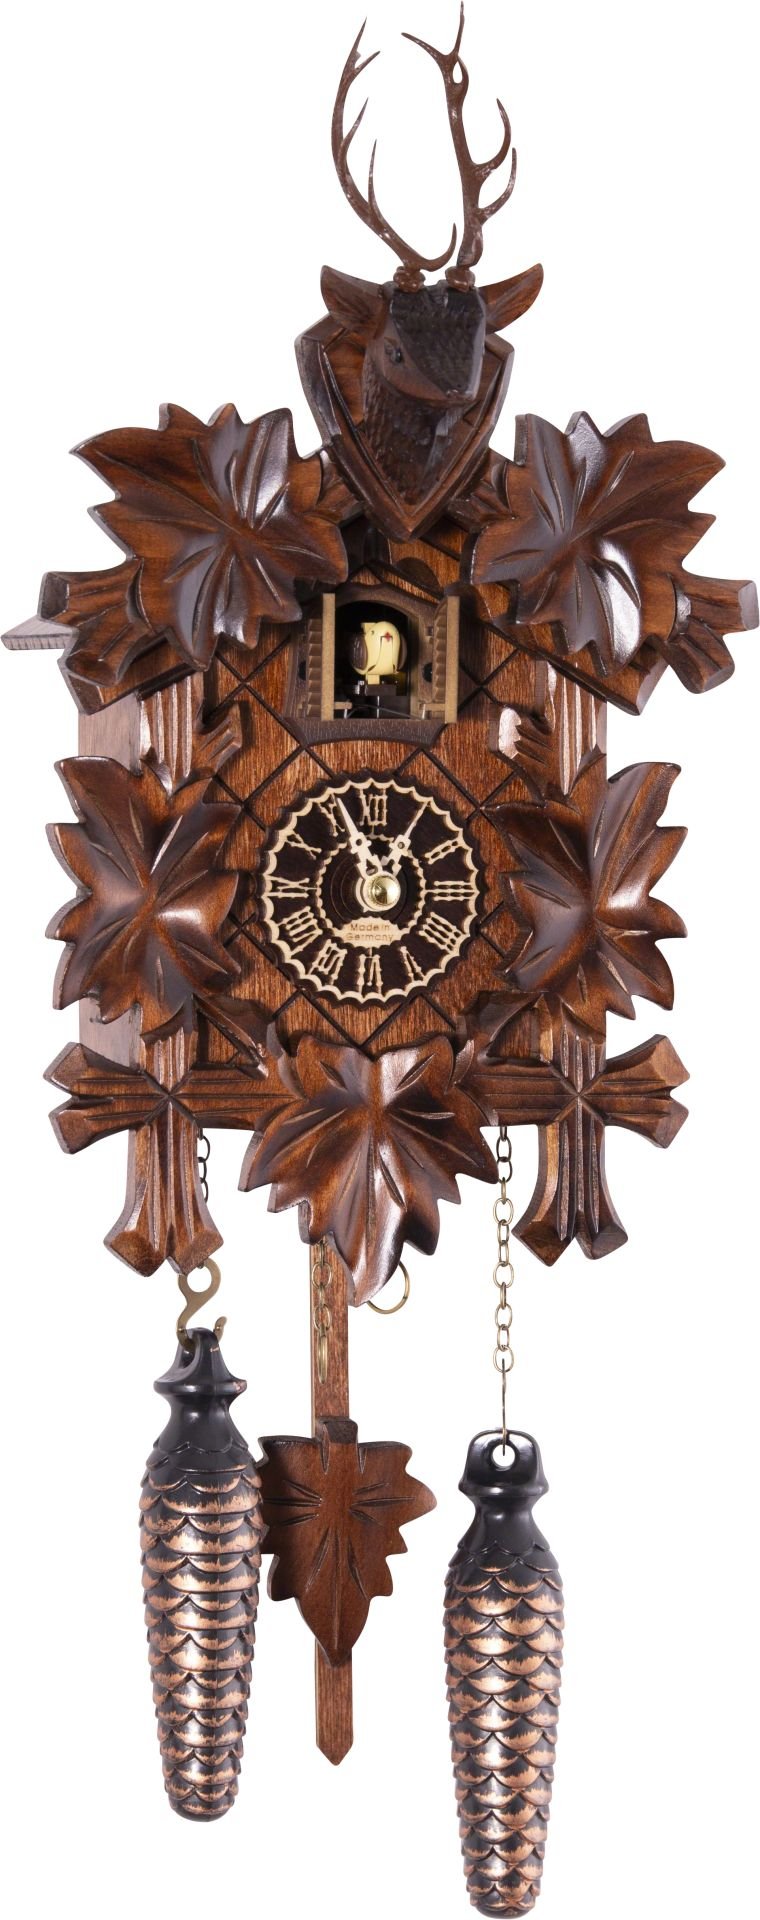 Kuckucksuhr geschnitzt Quarz-Uhrwerk 23cm von Trenkle Uhren